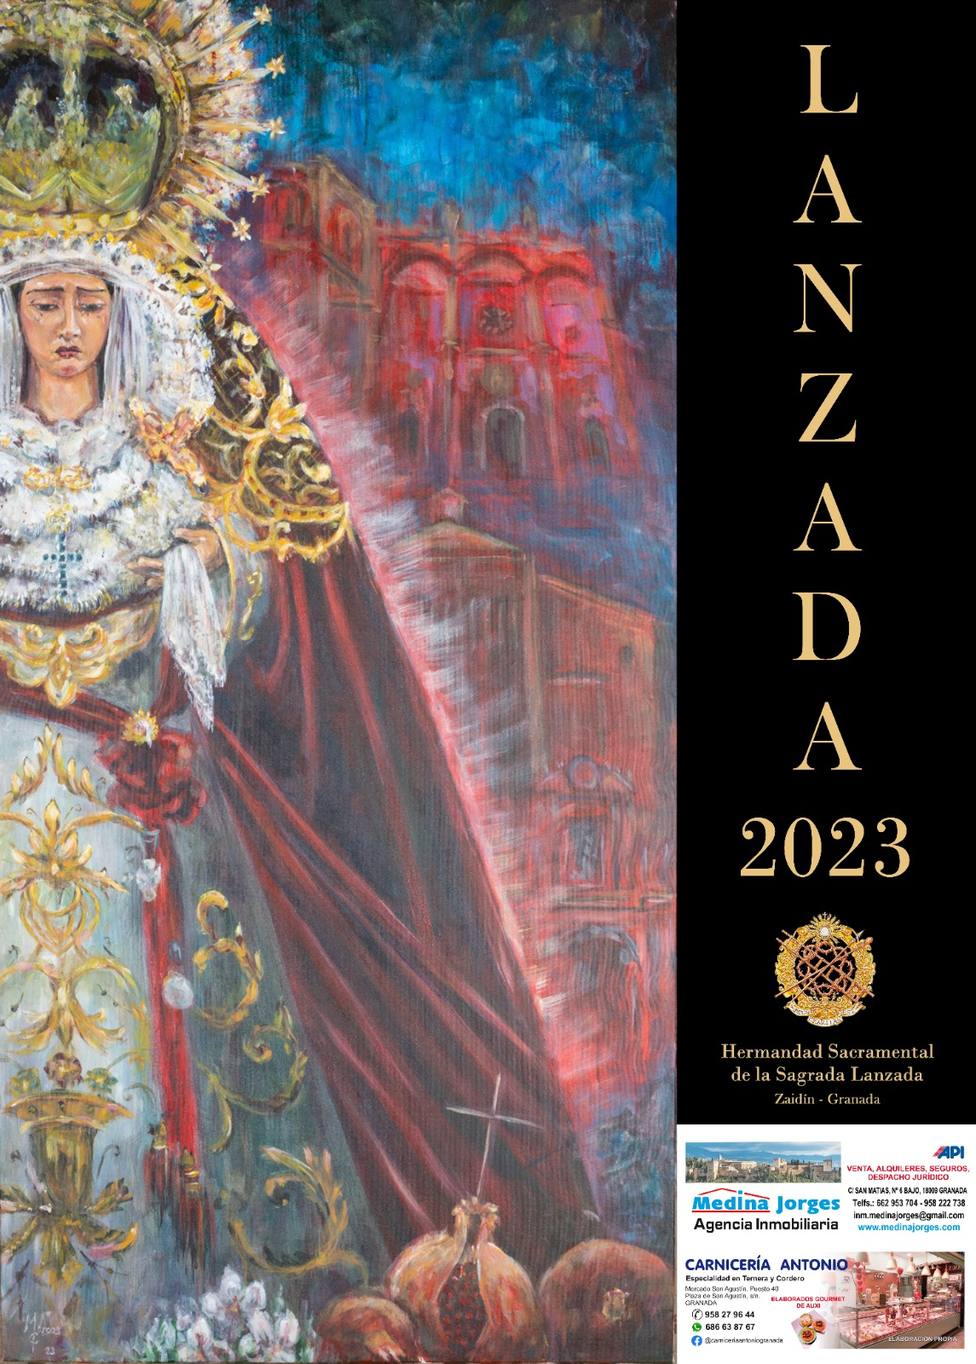 Desvelamos la simbología del cartel de la Cofradía de la Lanzada de Granada